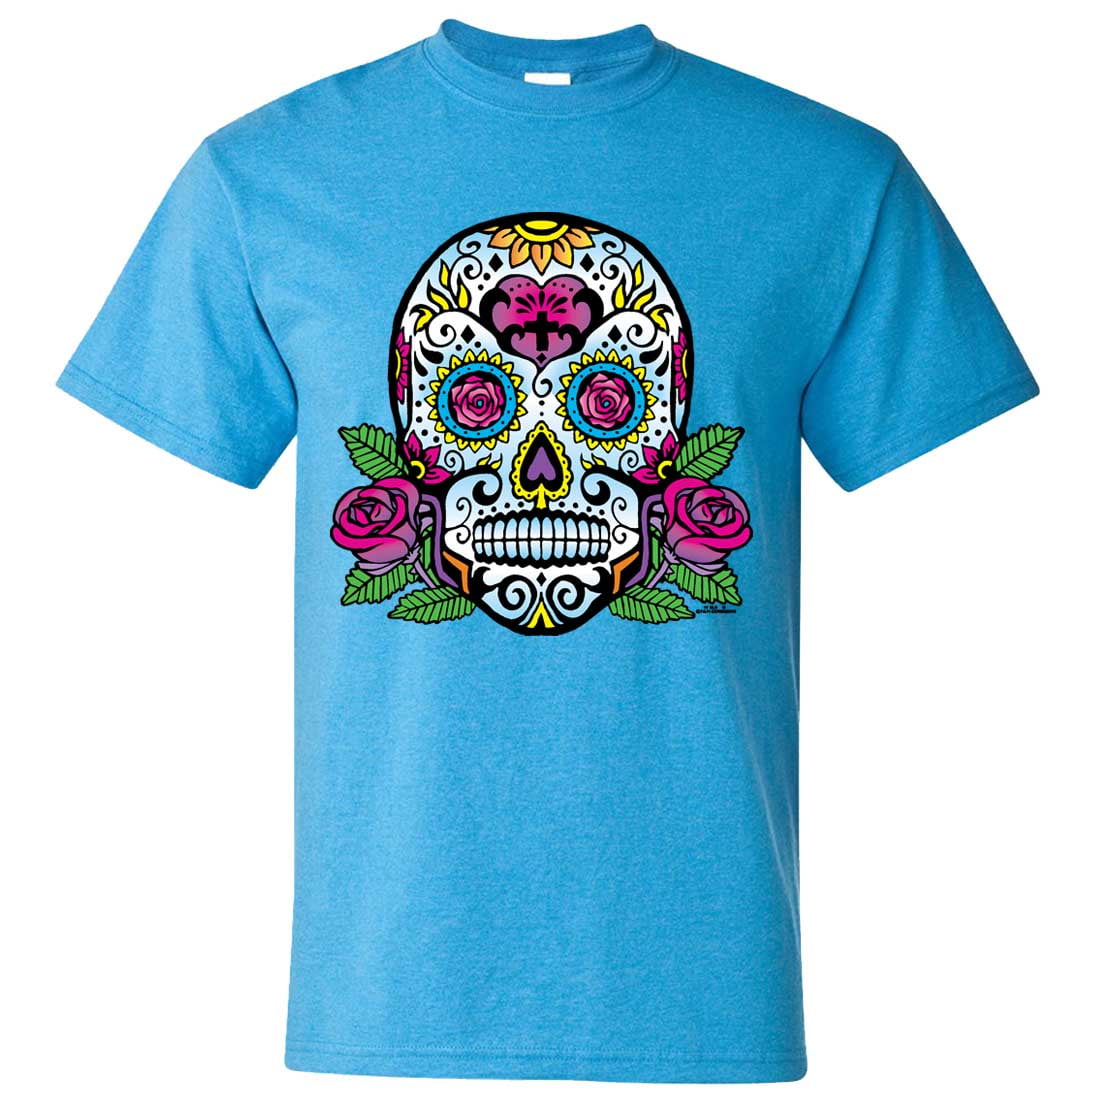 Dolphin Shirt Co - Dia De Los Muertos Sugar Skull Roses Asst Colors T ...